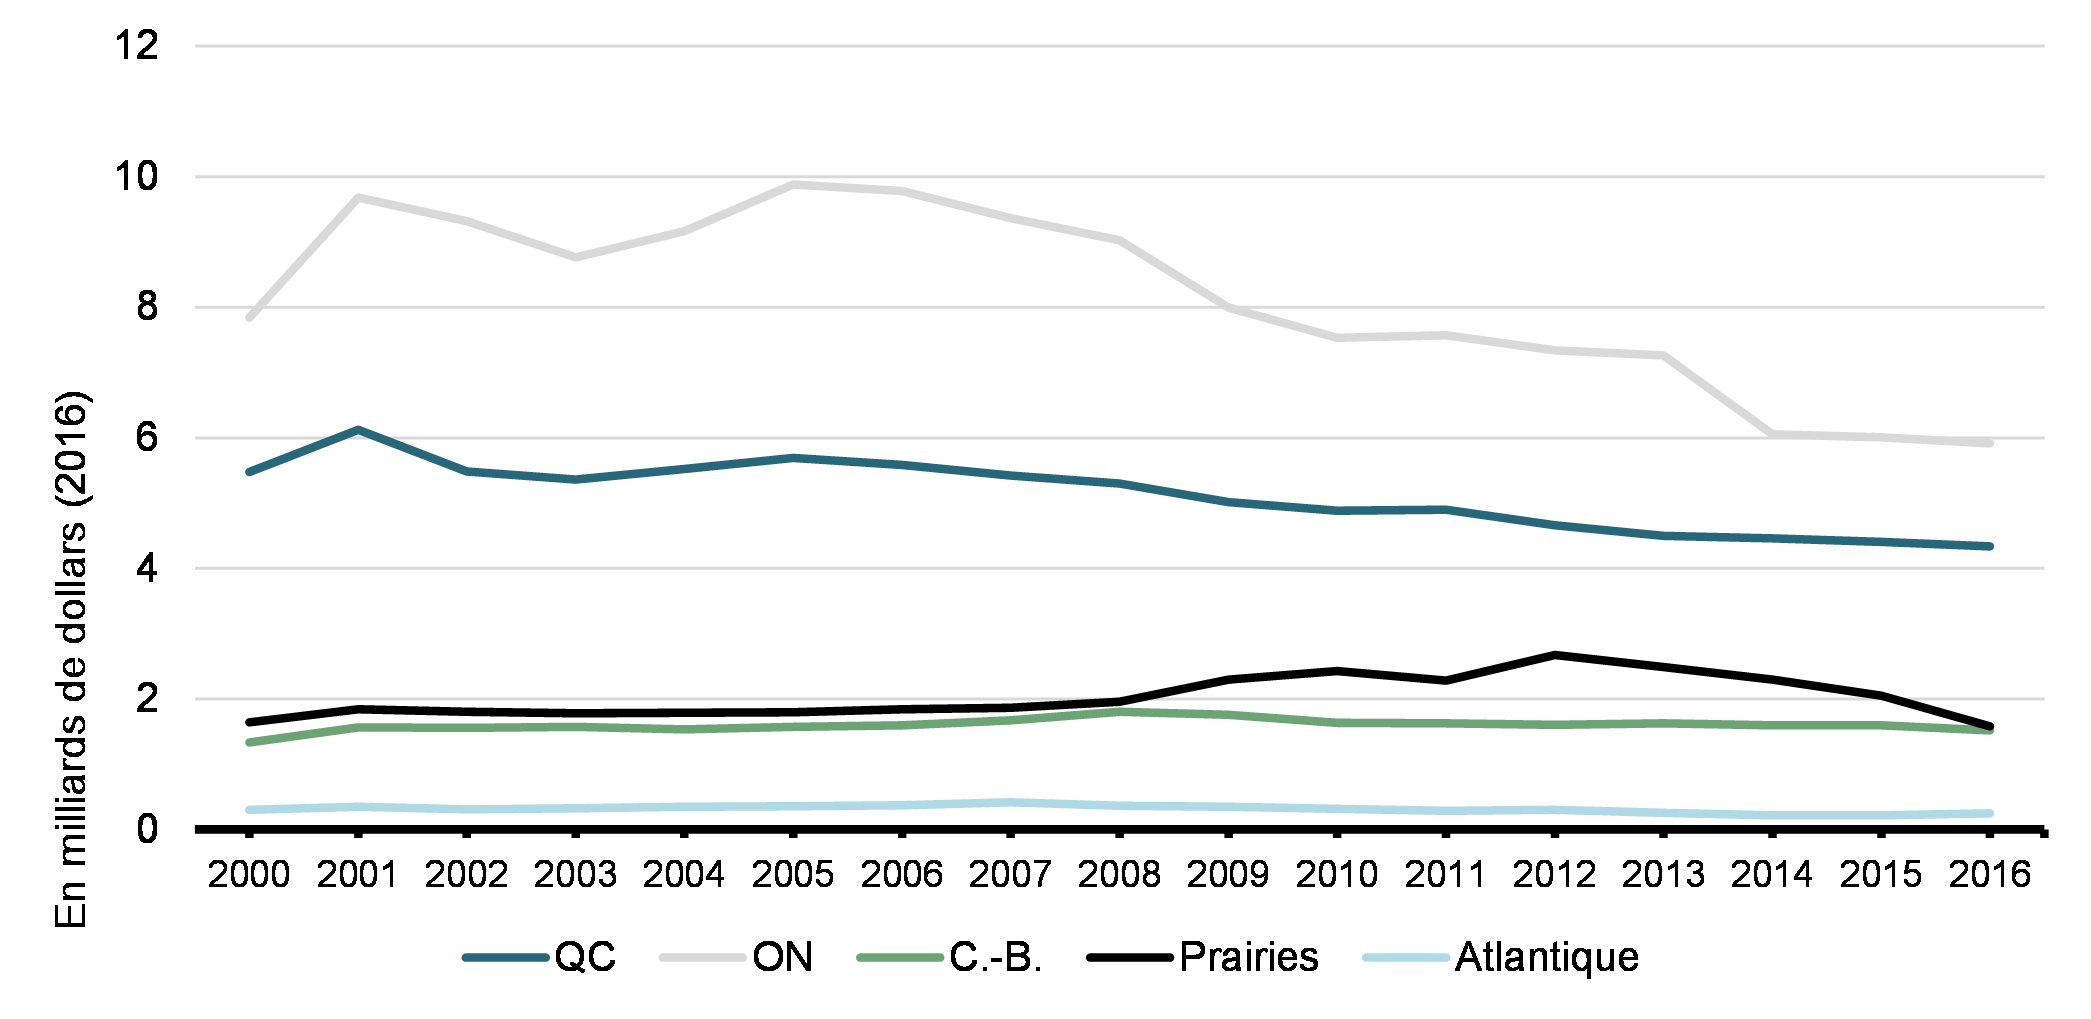 Graphique 5: Dépenses de RS&DE par province, de 2000 à 2016